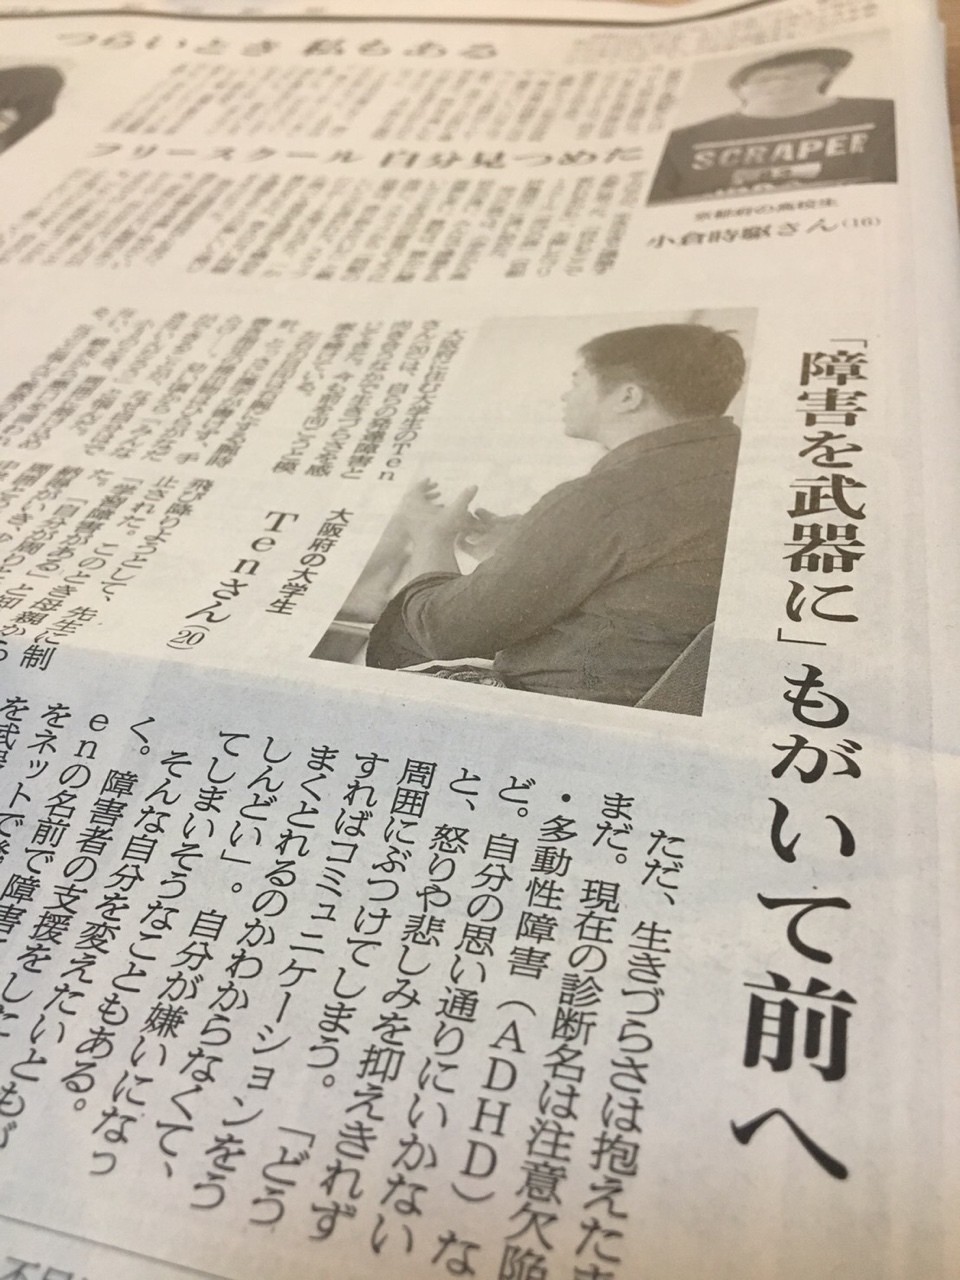 代表のTenがインタビューを受けている様子を収めた、朝日新聞の写真